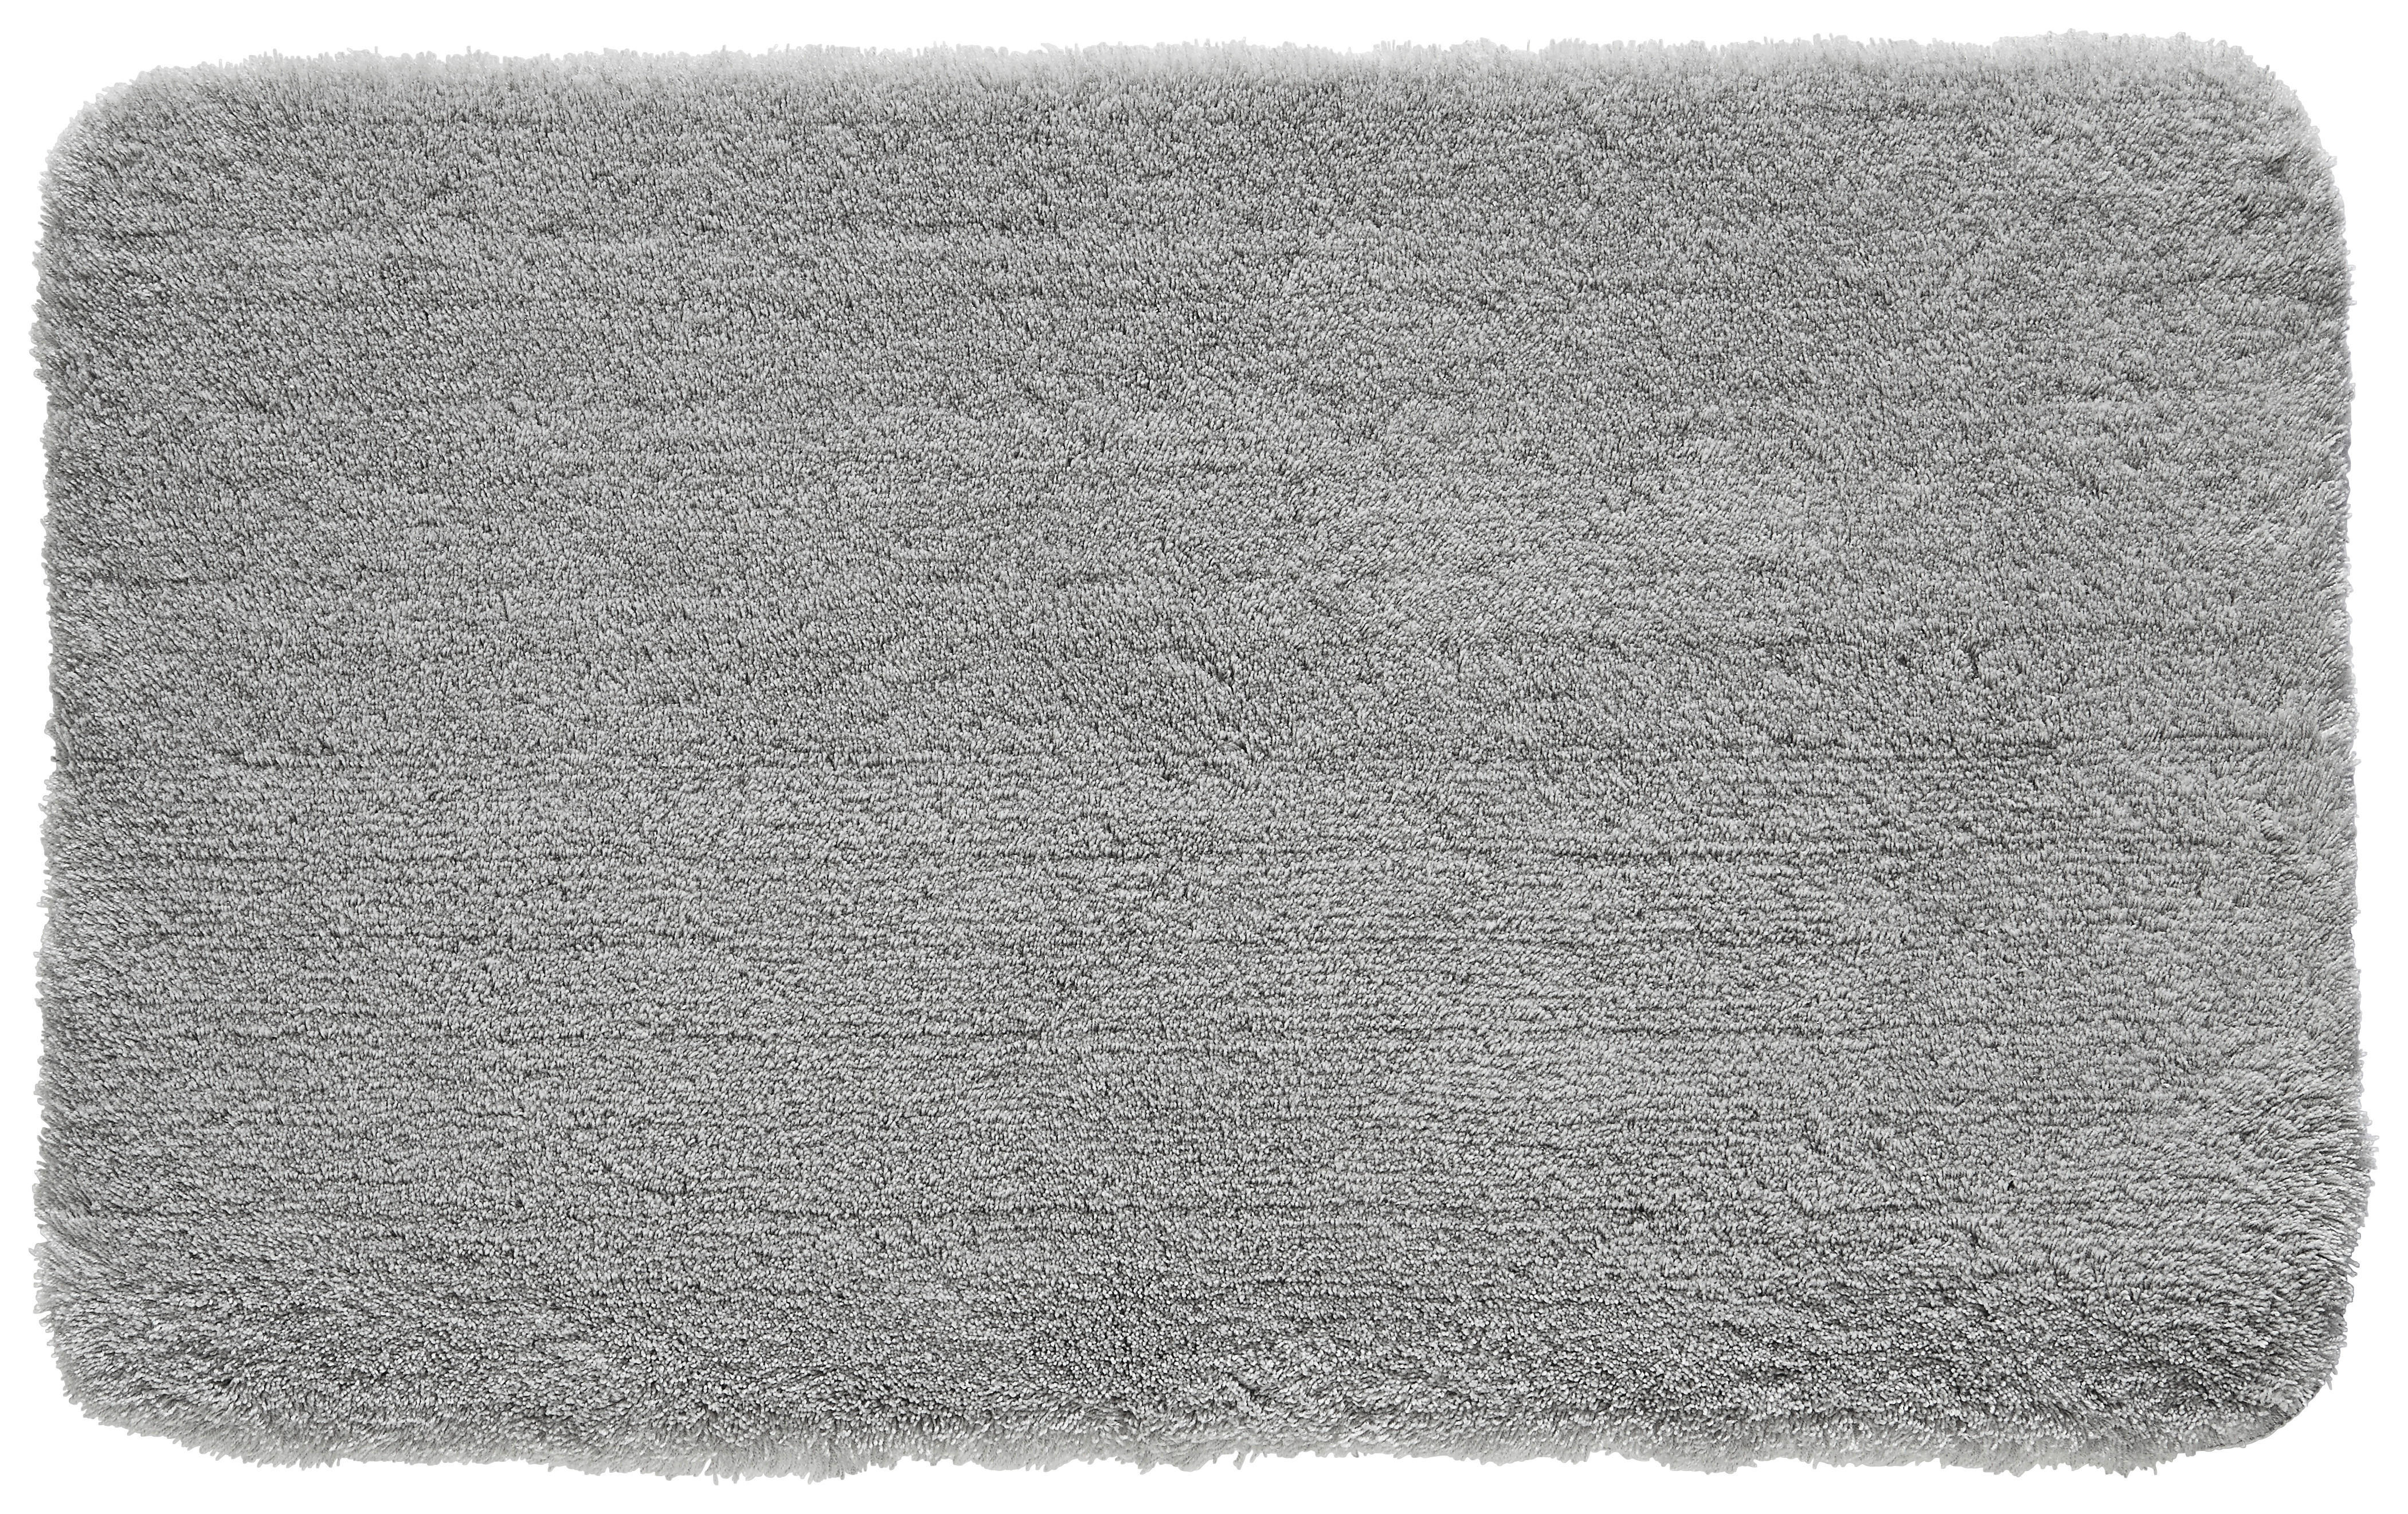 BADTEPPICH Relax Grau 60/100 cm  - Grau, Basics, Kunststoff/Textil (60/100cm) - Kleine Wolke